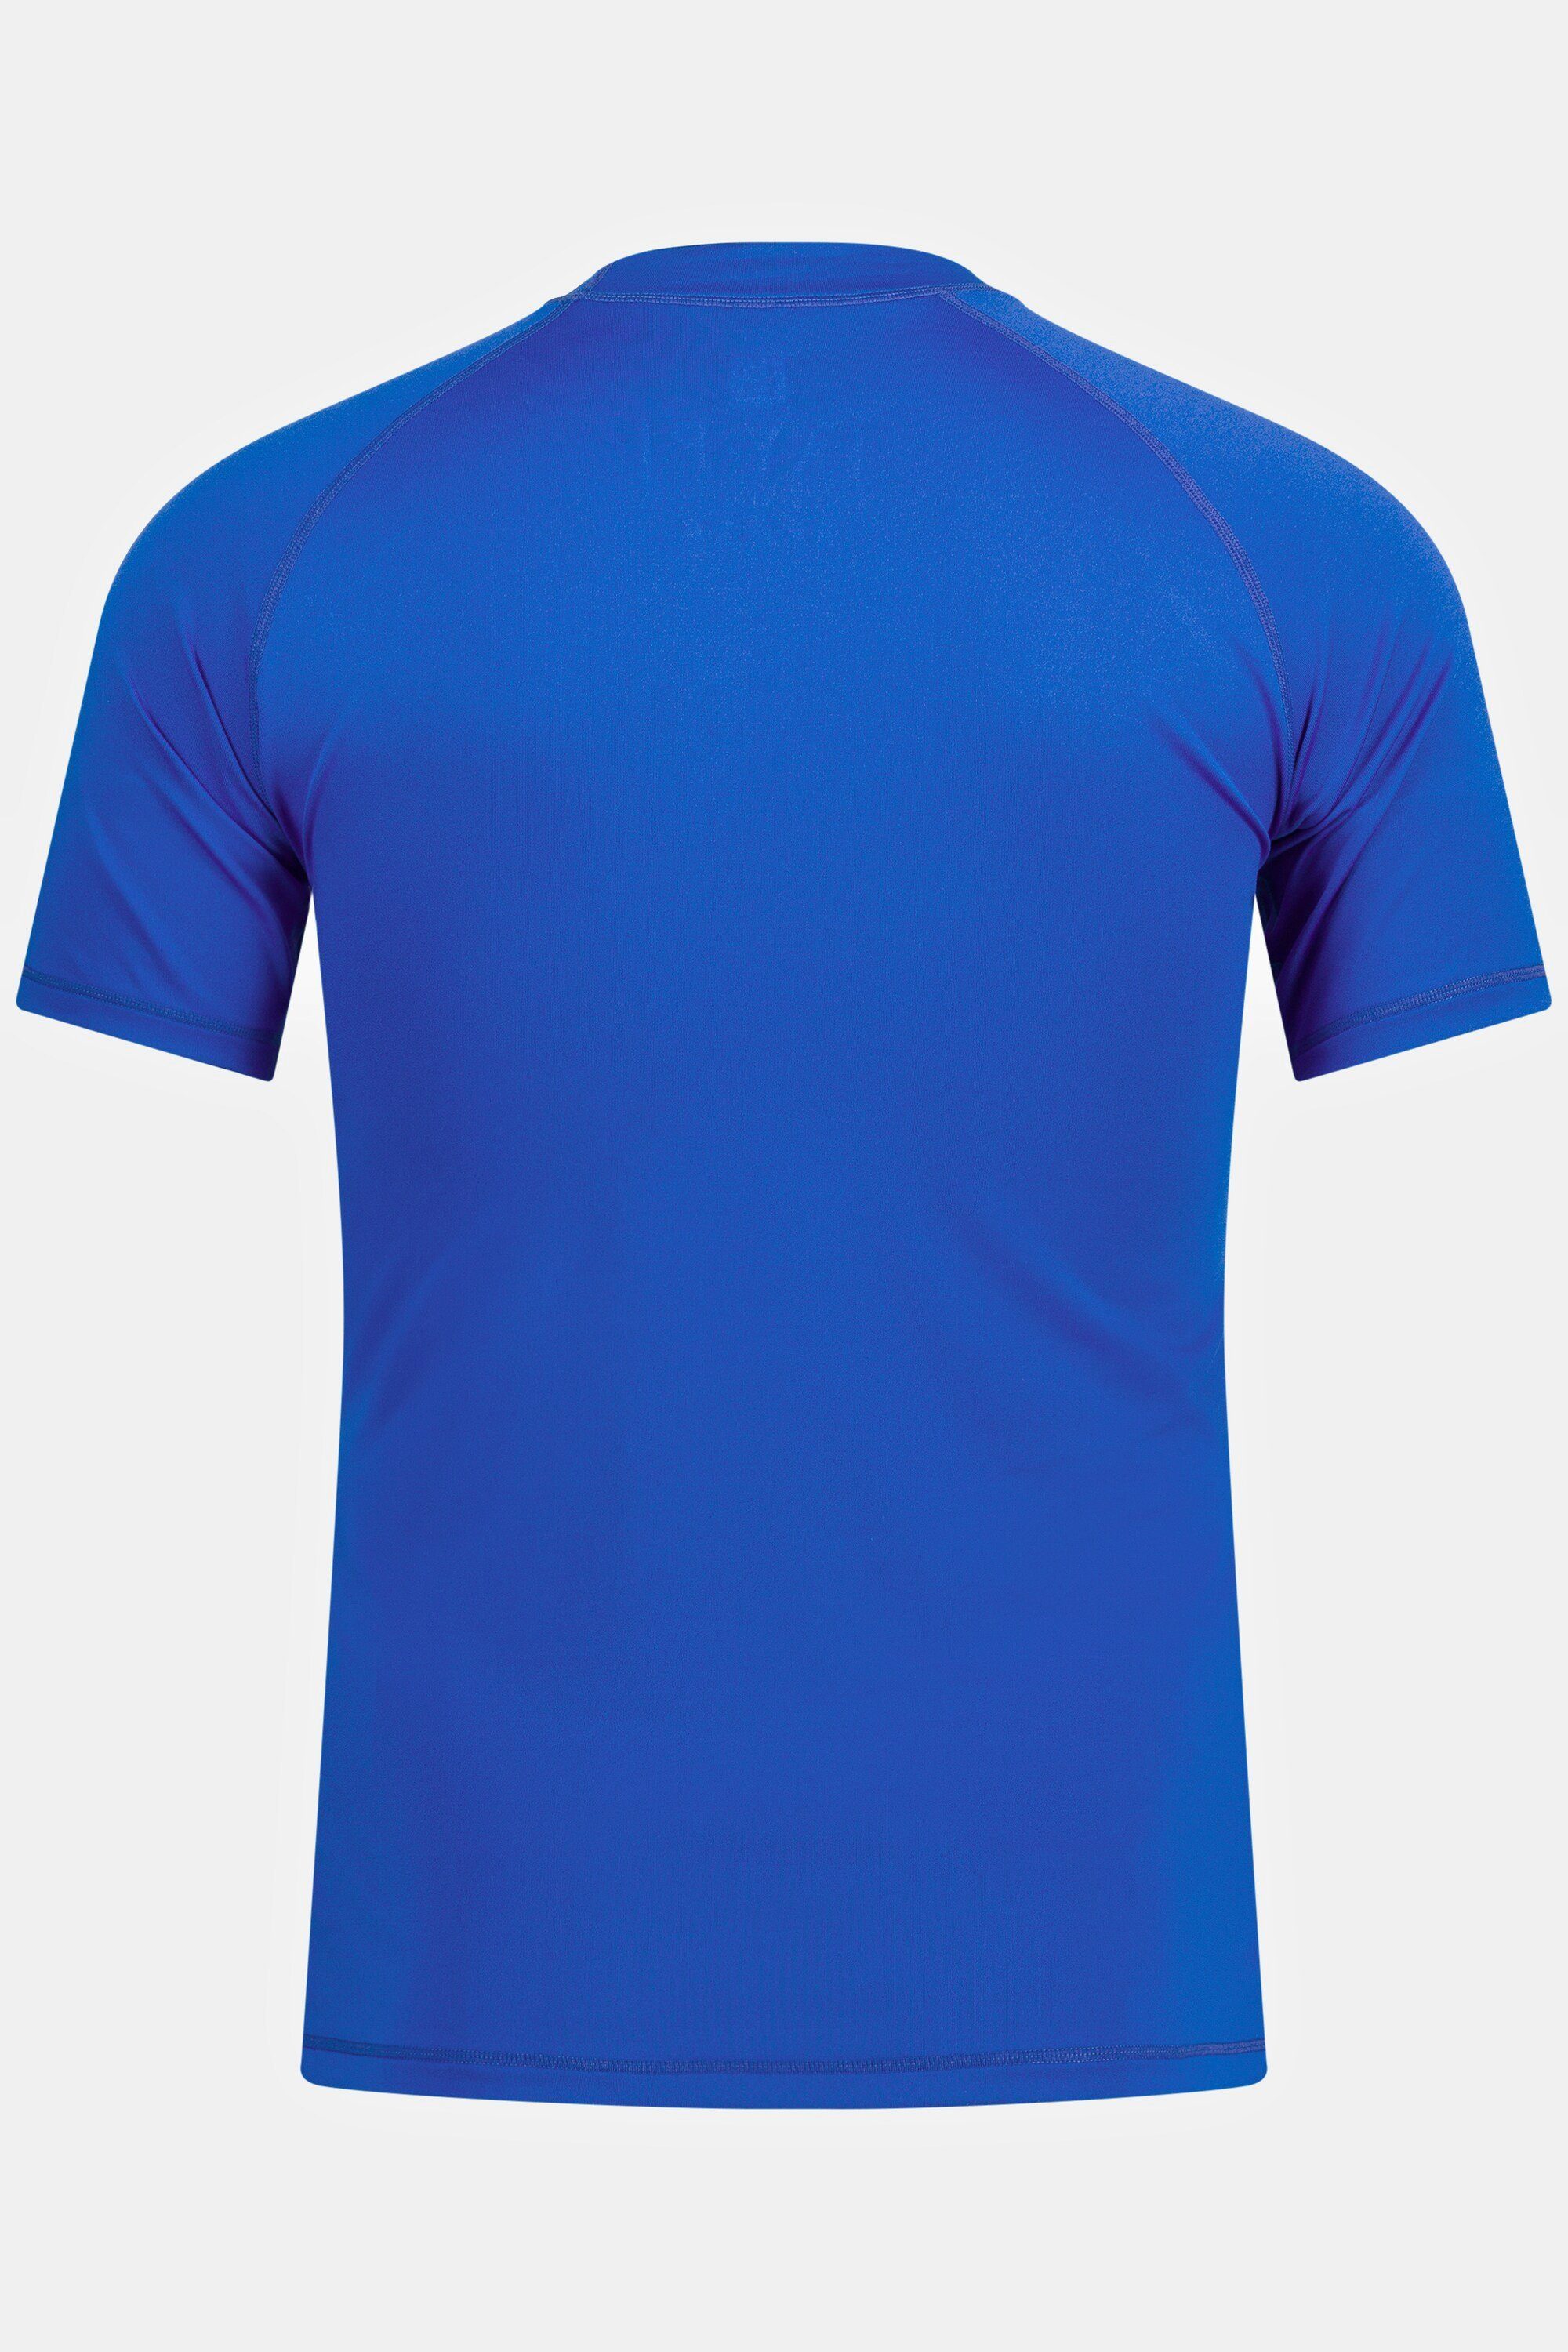 Schwimmshirt blau Stehkragen UV-Schutz JP1880 T-Shirt Halbarm